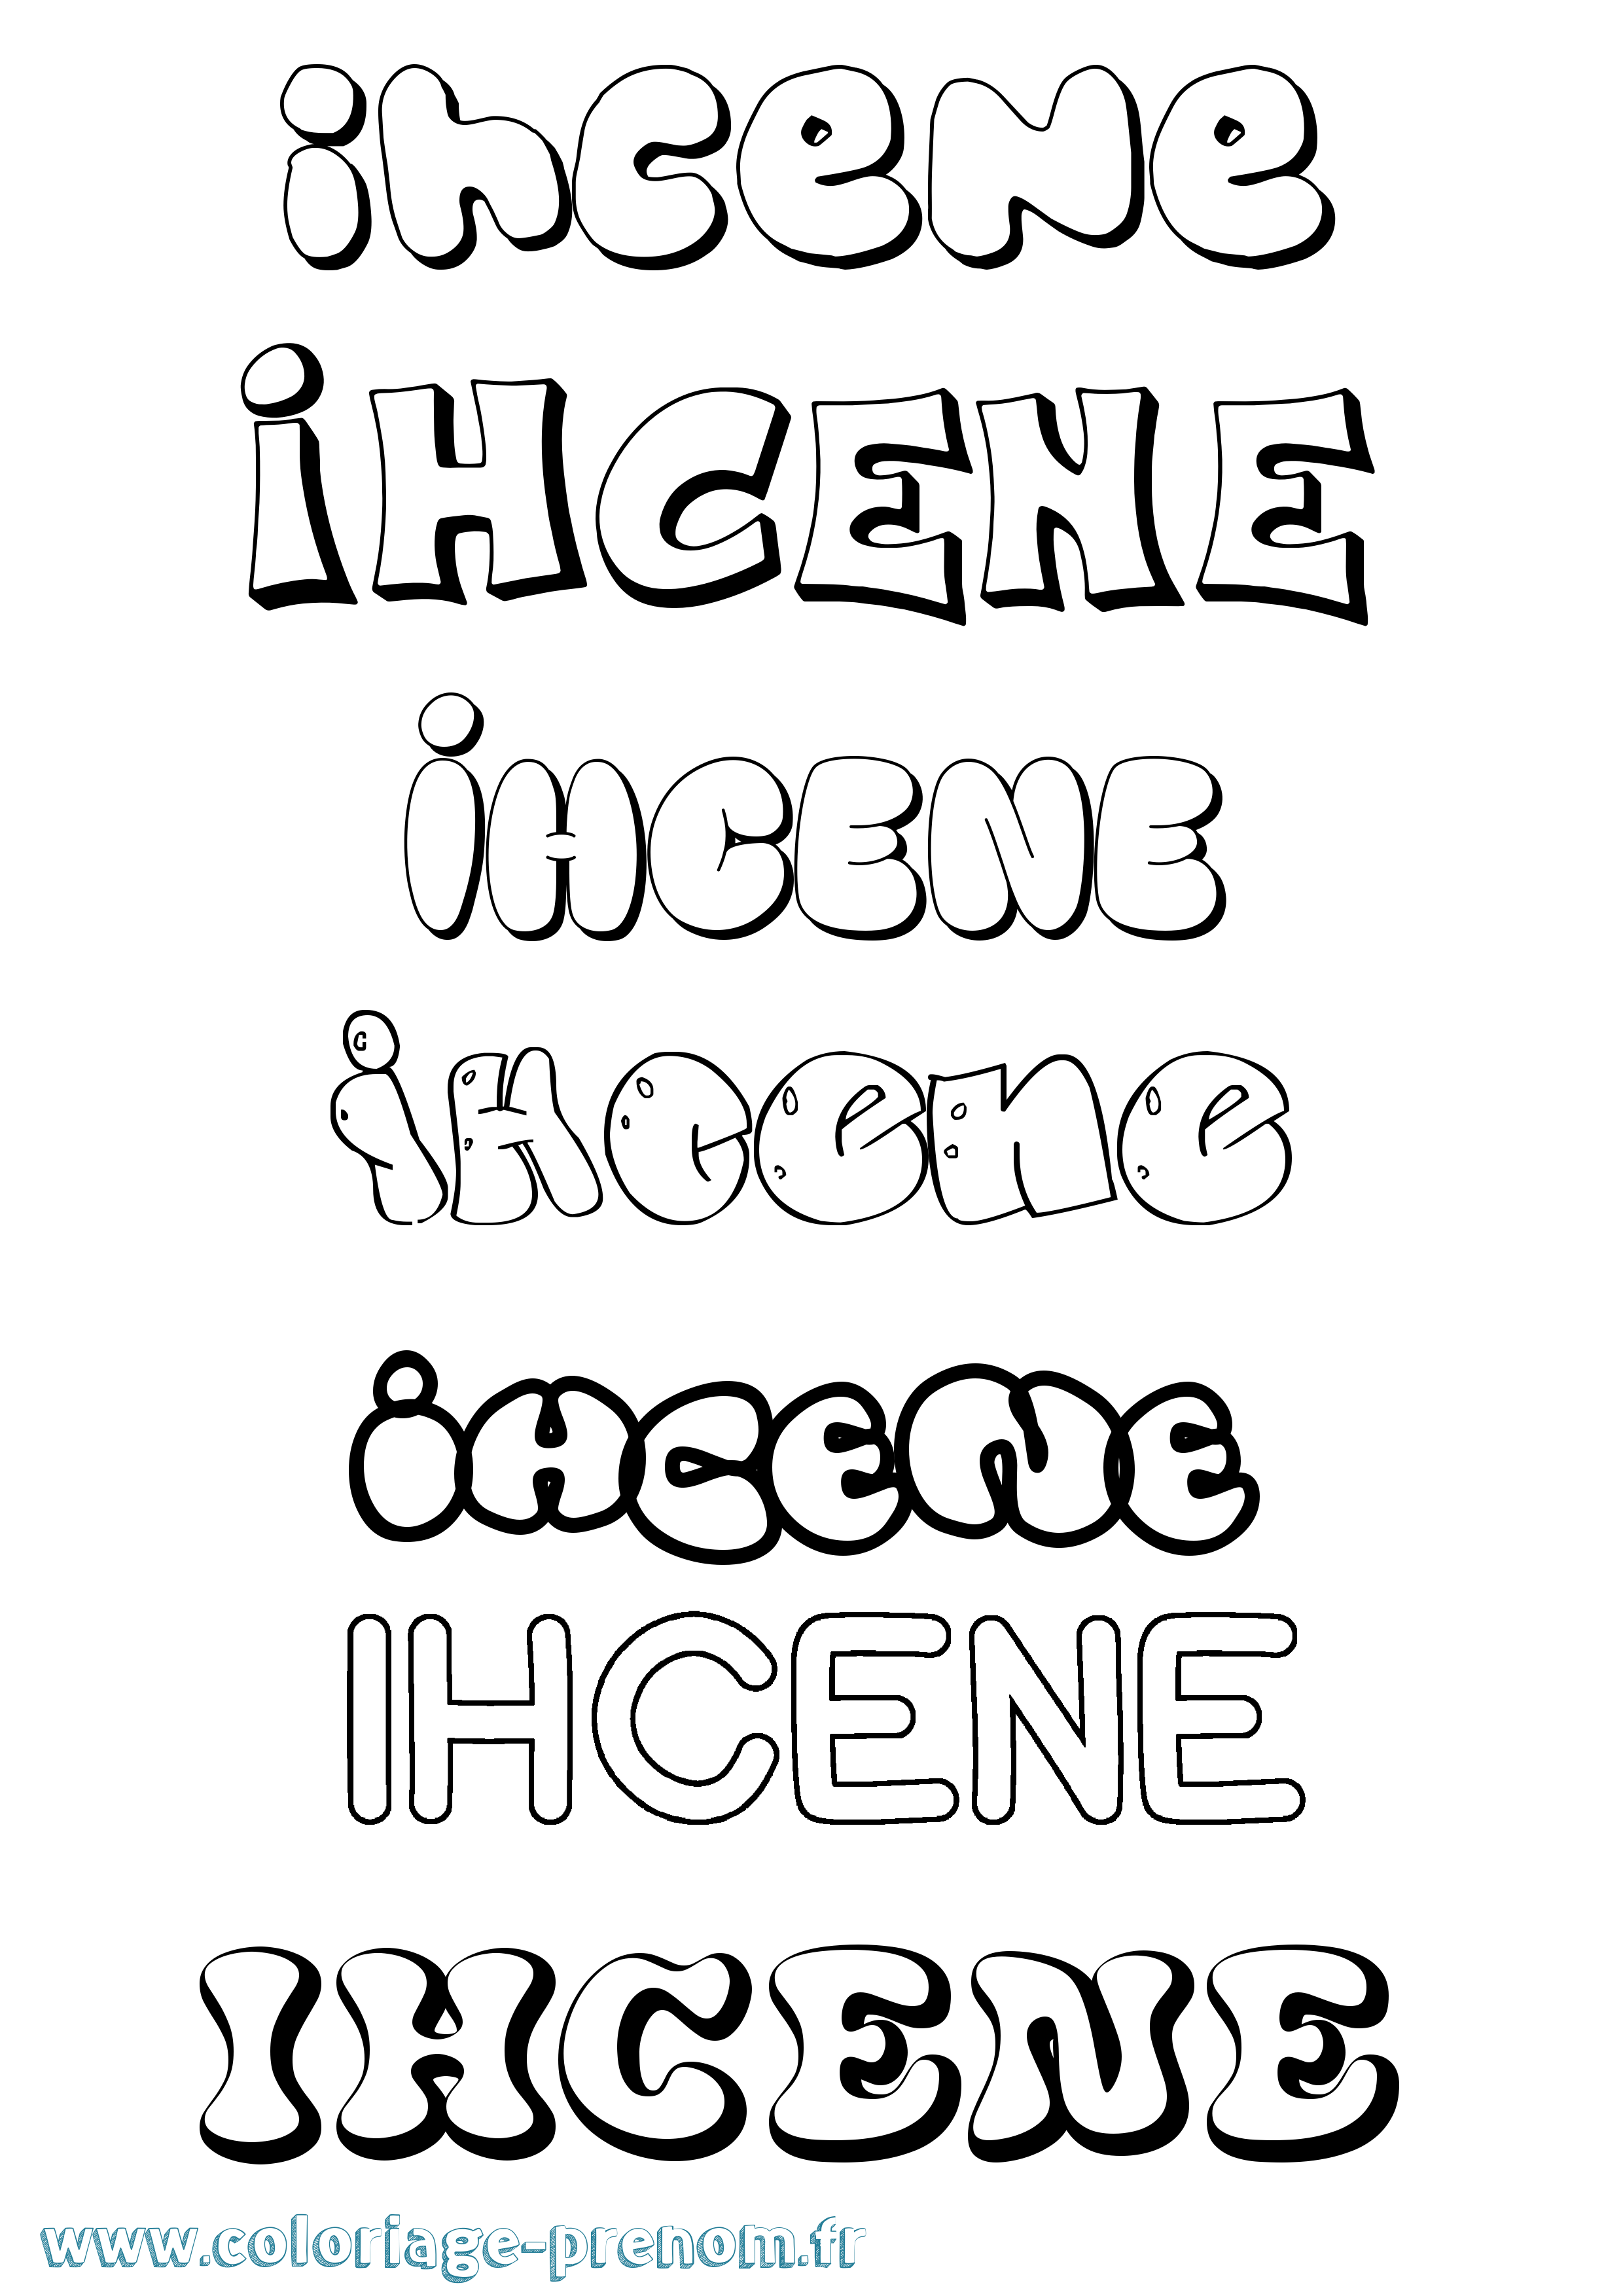 Coloriage prénom Ihcene Bubble